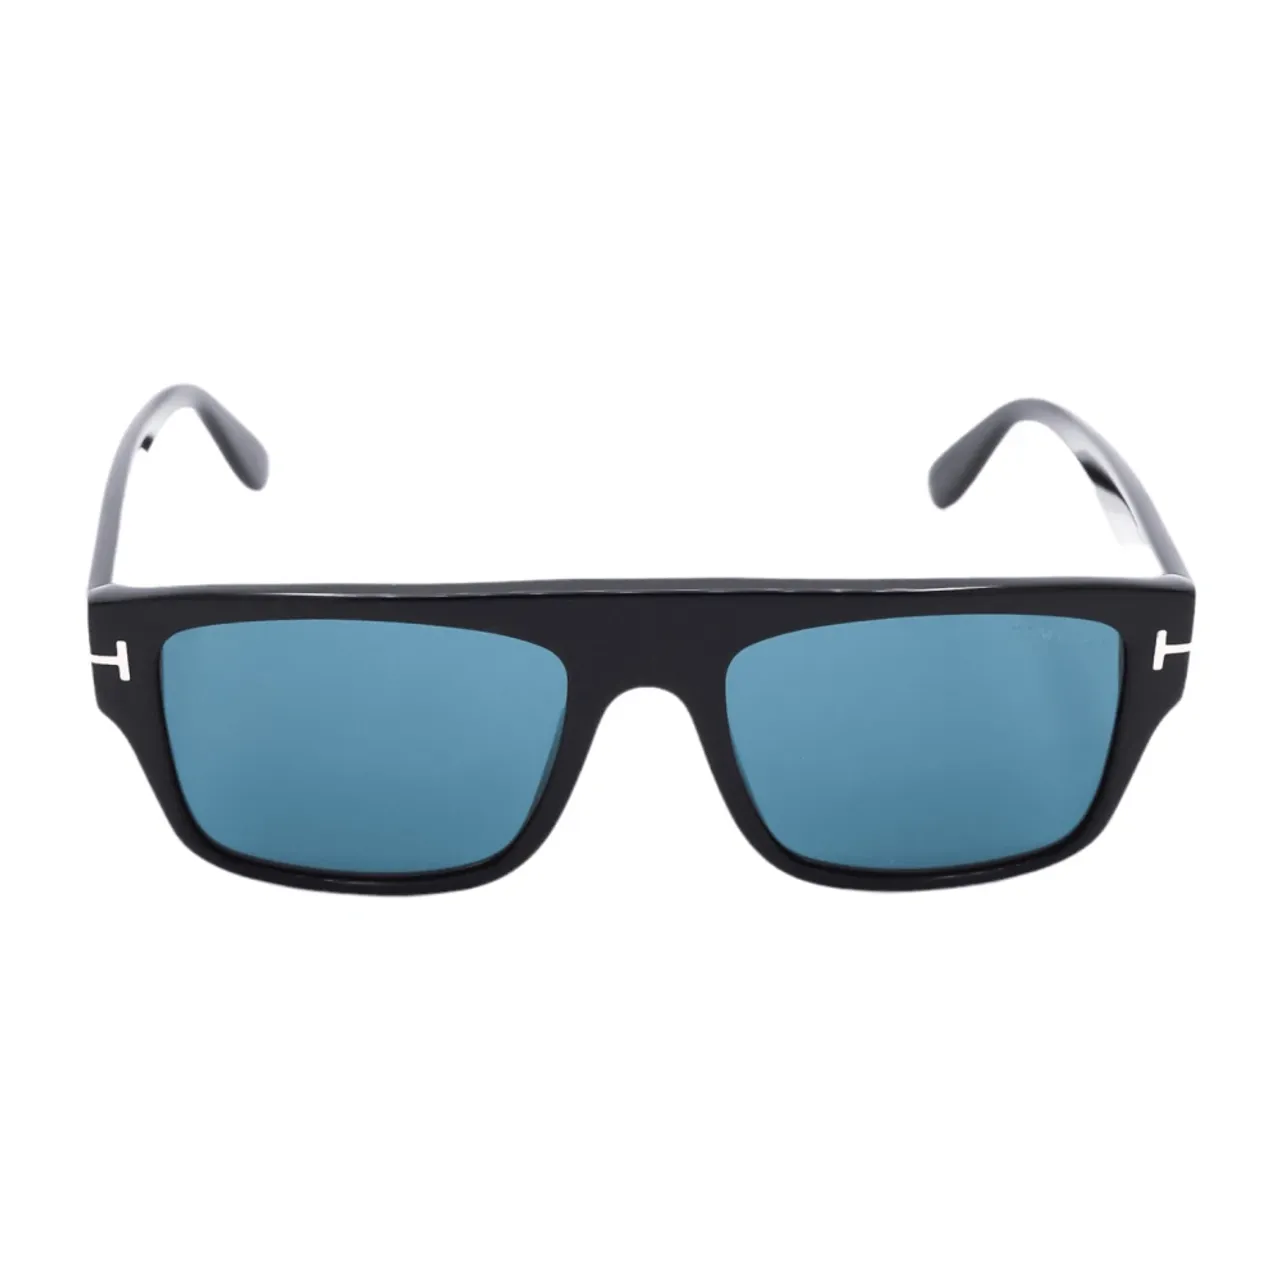 Tom Ford , Rectangular Sunglasses with Blue Lenses ,Black unisex, Sizes: